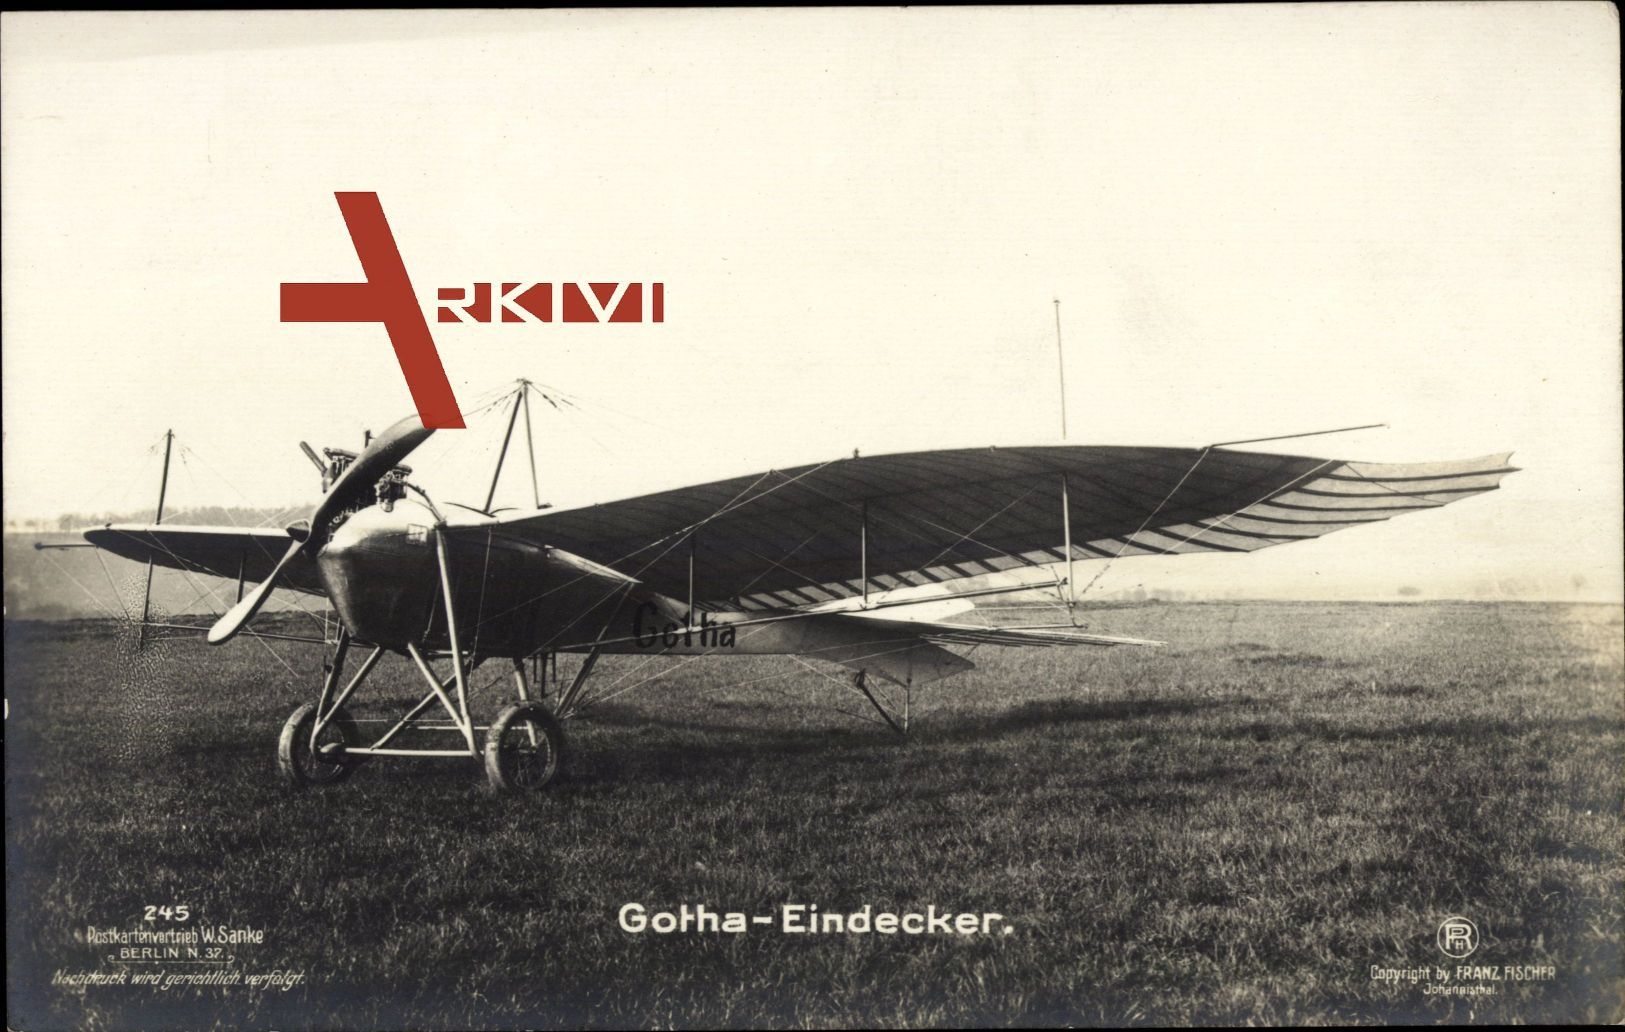 Gotha Eindecker, Monoplan, Kampfflugzeug, Sanke 245